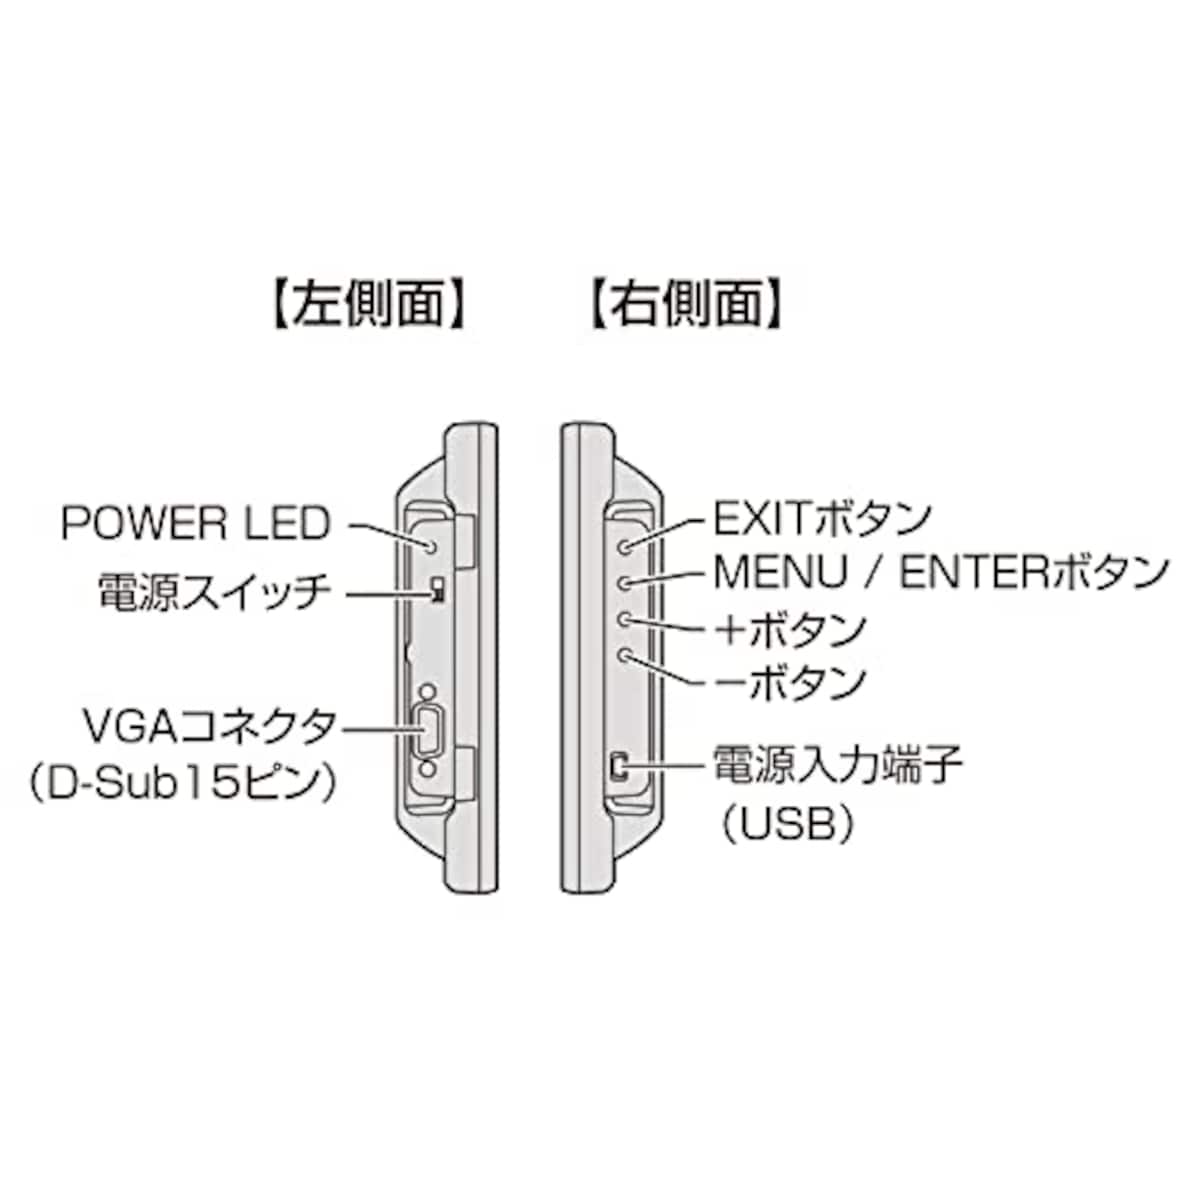  センチュリー 8インチアナログRGBモニター plus one VGA ブラック LCD-8000V3B_FP画像4 